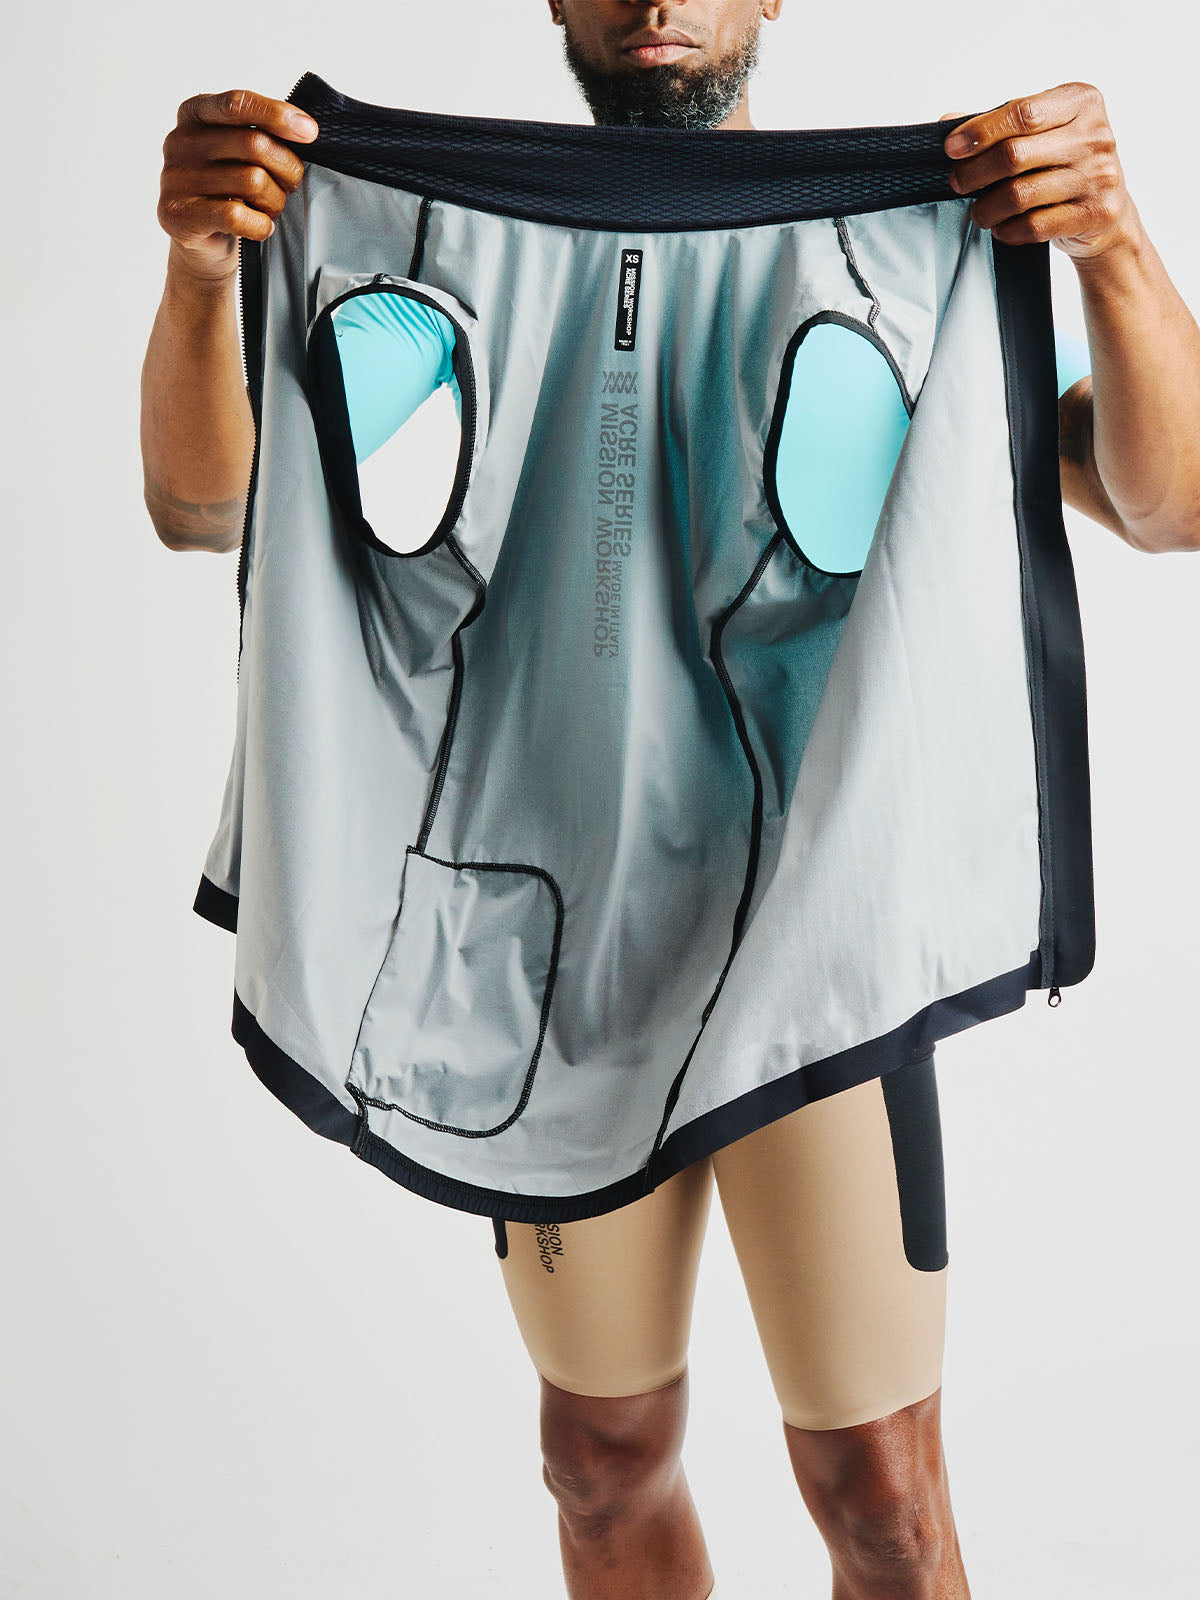 Altosphere Vest från Mission Workshop - vädertåliga väskor och tekniska kläder - San Francisco och Los Angeles - byggd för att tåla - garanterad för alltid